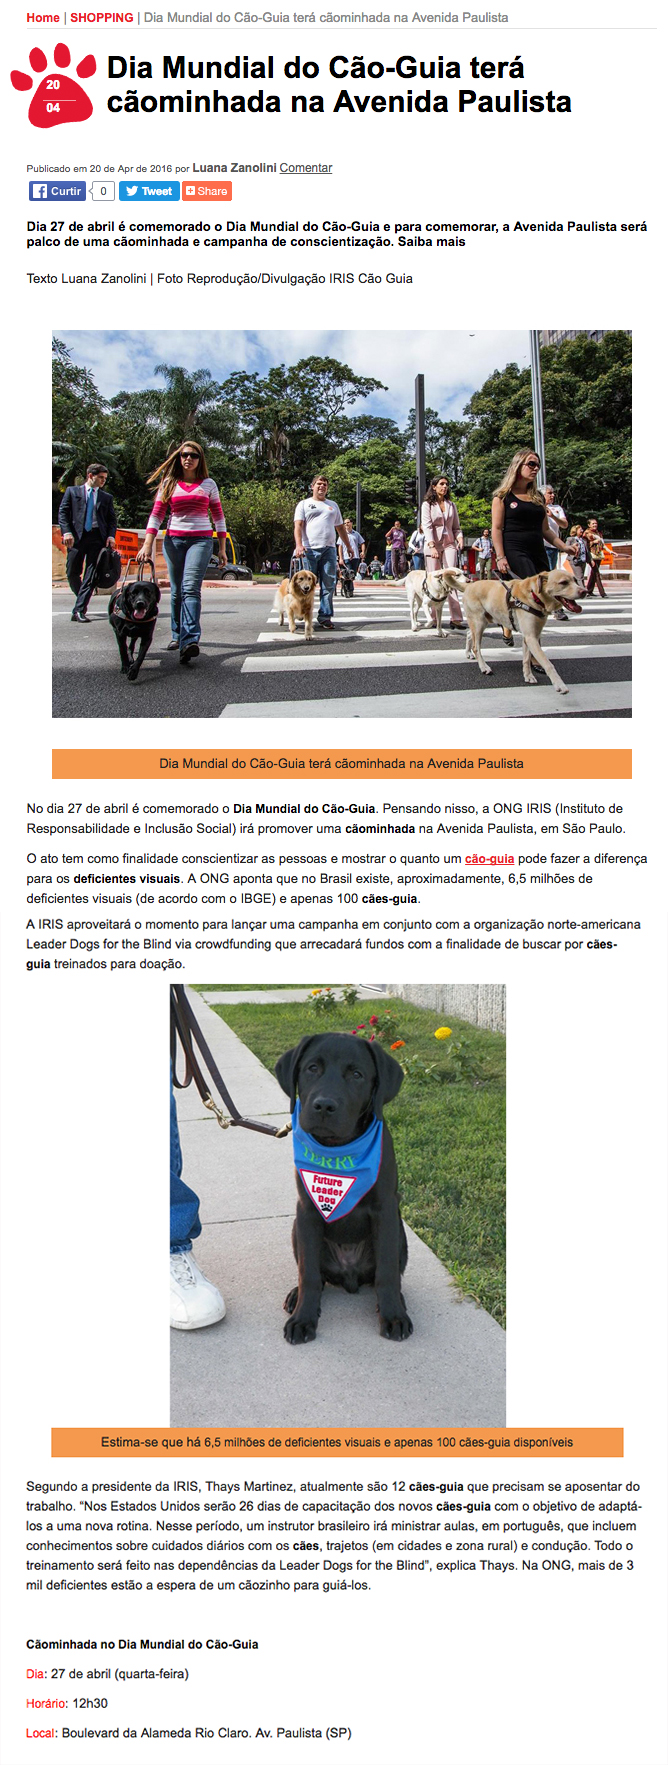 Imagem 2016 - Dia mundial do cão-guia terá caminhada na Av. Paulista